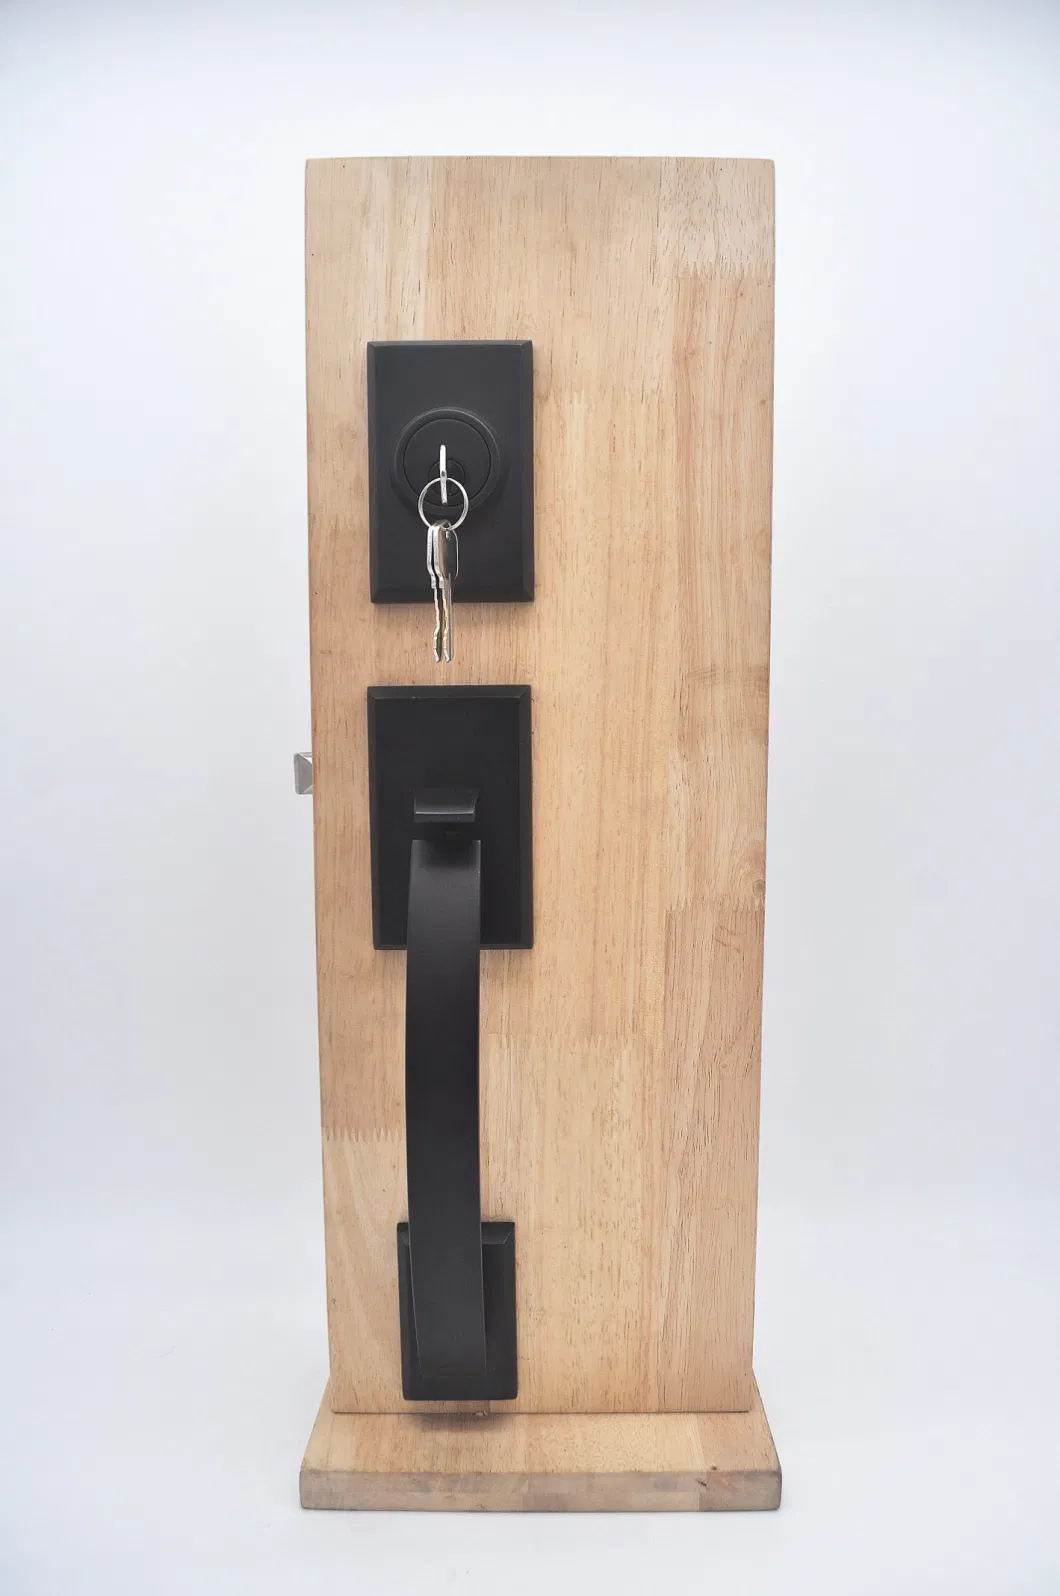 Maxal High Quality Entry Door Lock, Matt Black Grip Handle Door Locksets